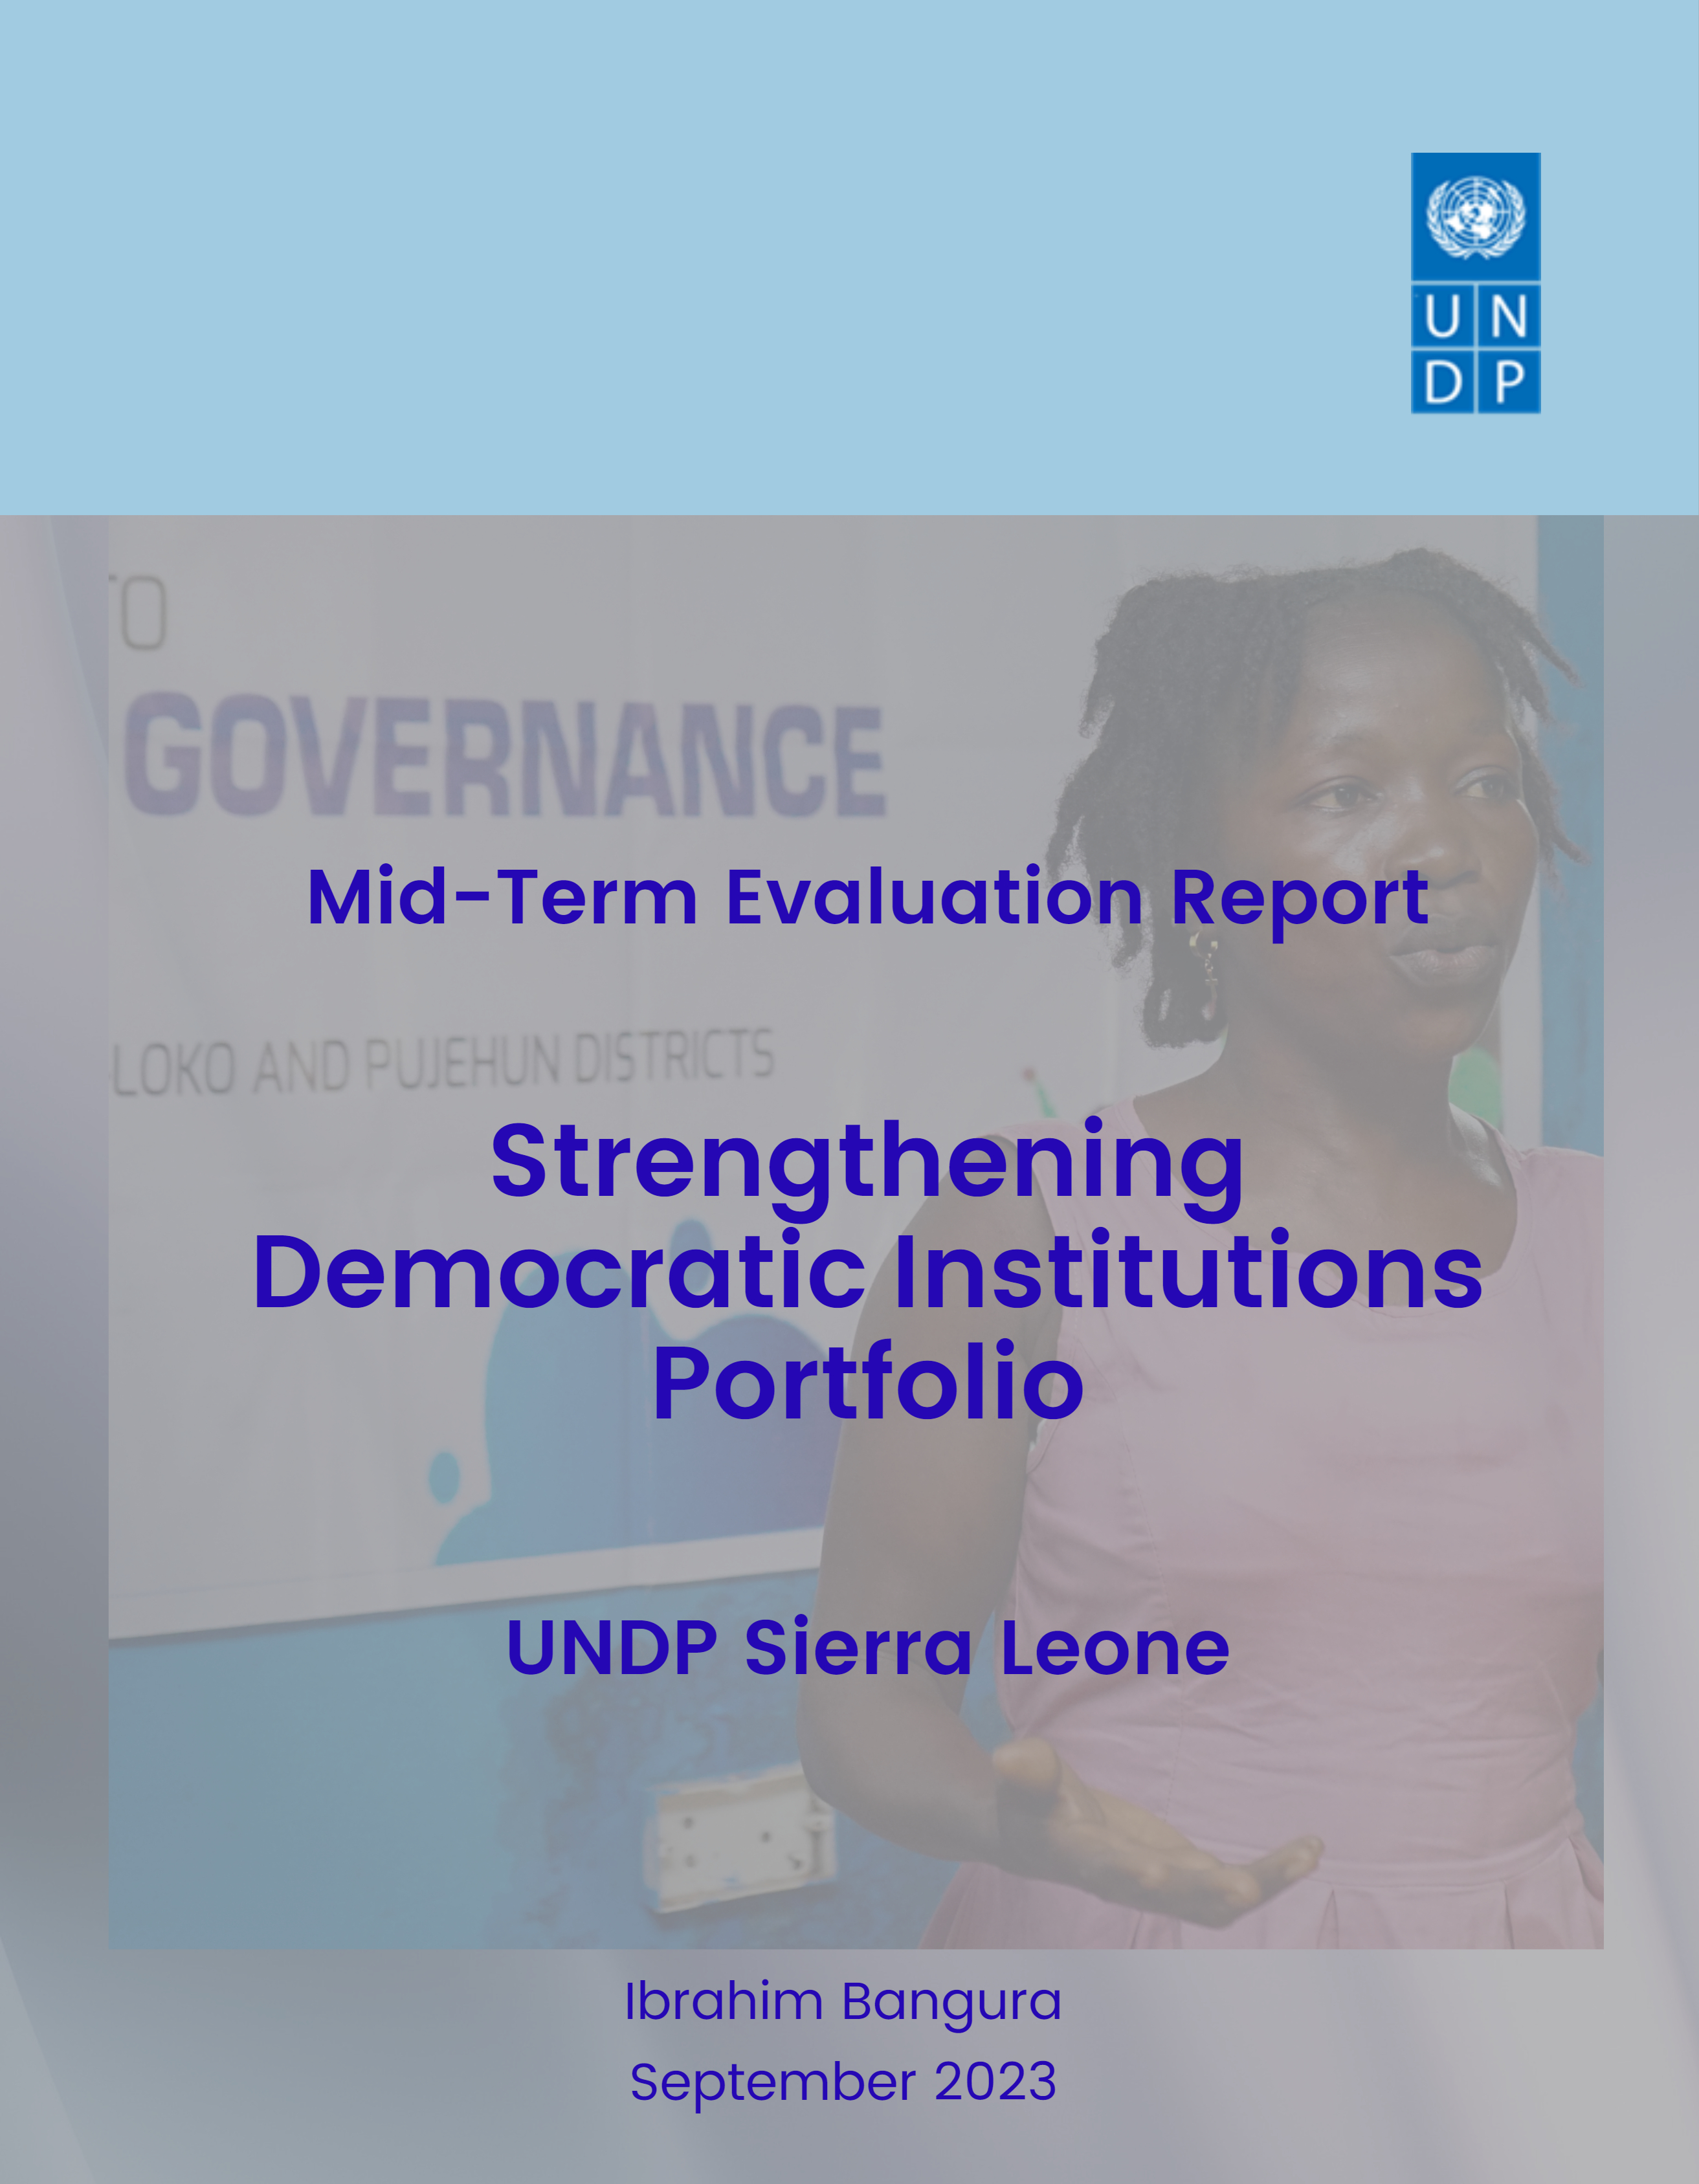 Mid-term Evaluation of Strengthening Democratic Institutions Portfolio